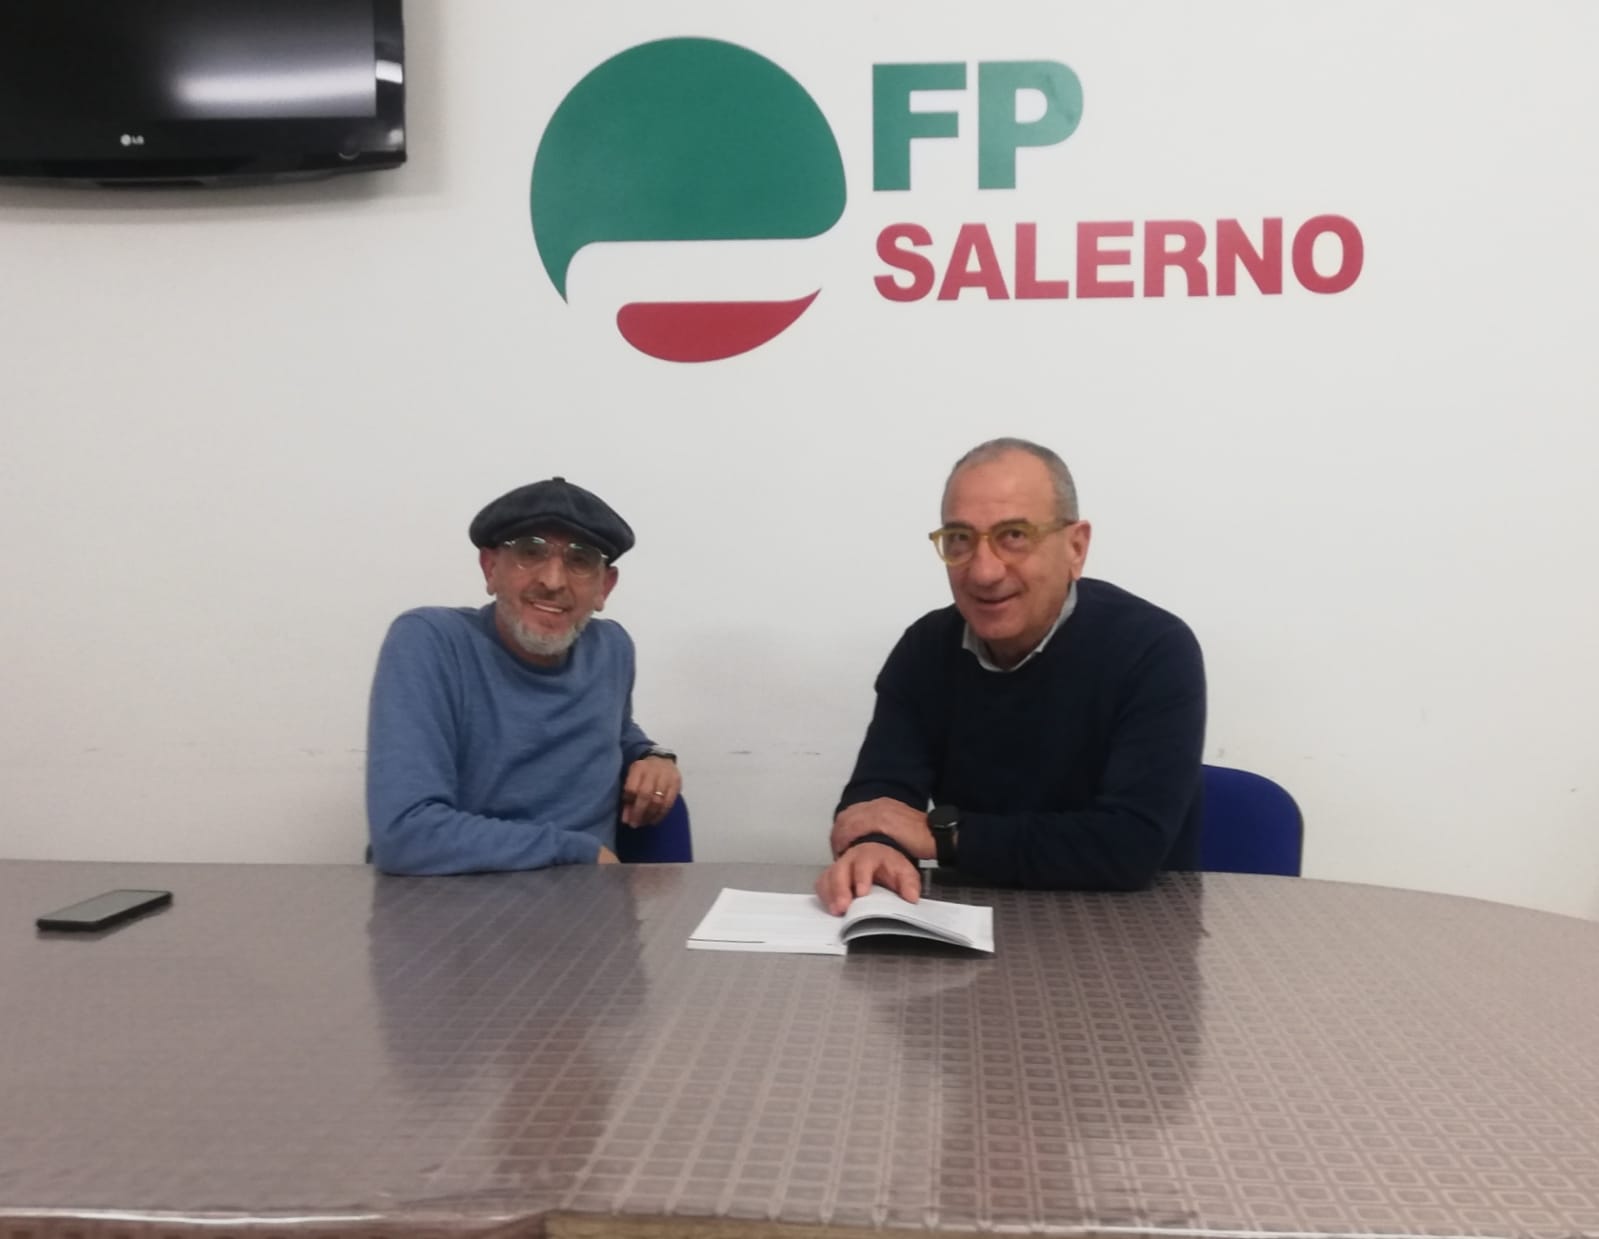 Salerno: Cisl FP, caos a Distretto Sanitario, grave carenza di personale amministrativo, a rischio prestazioni ad utenti